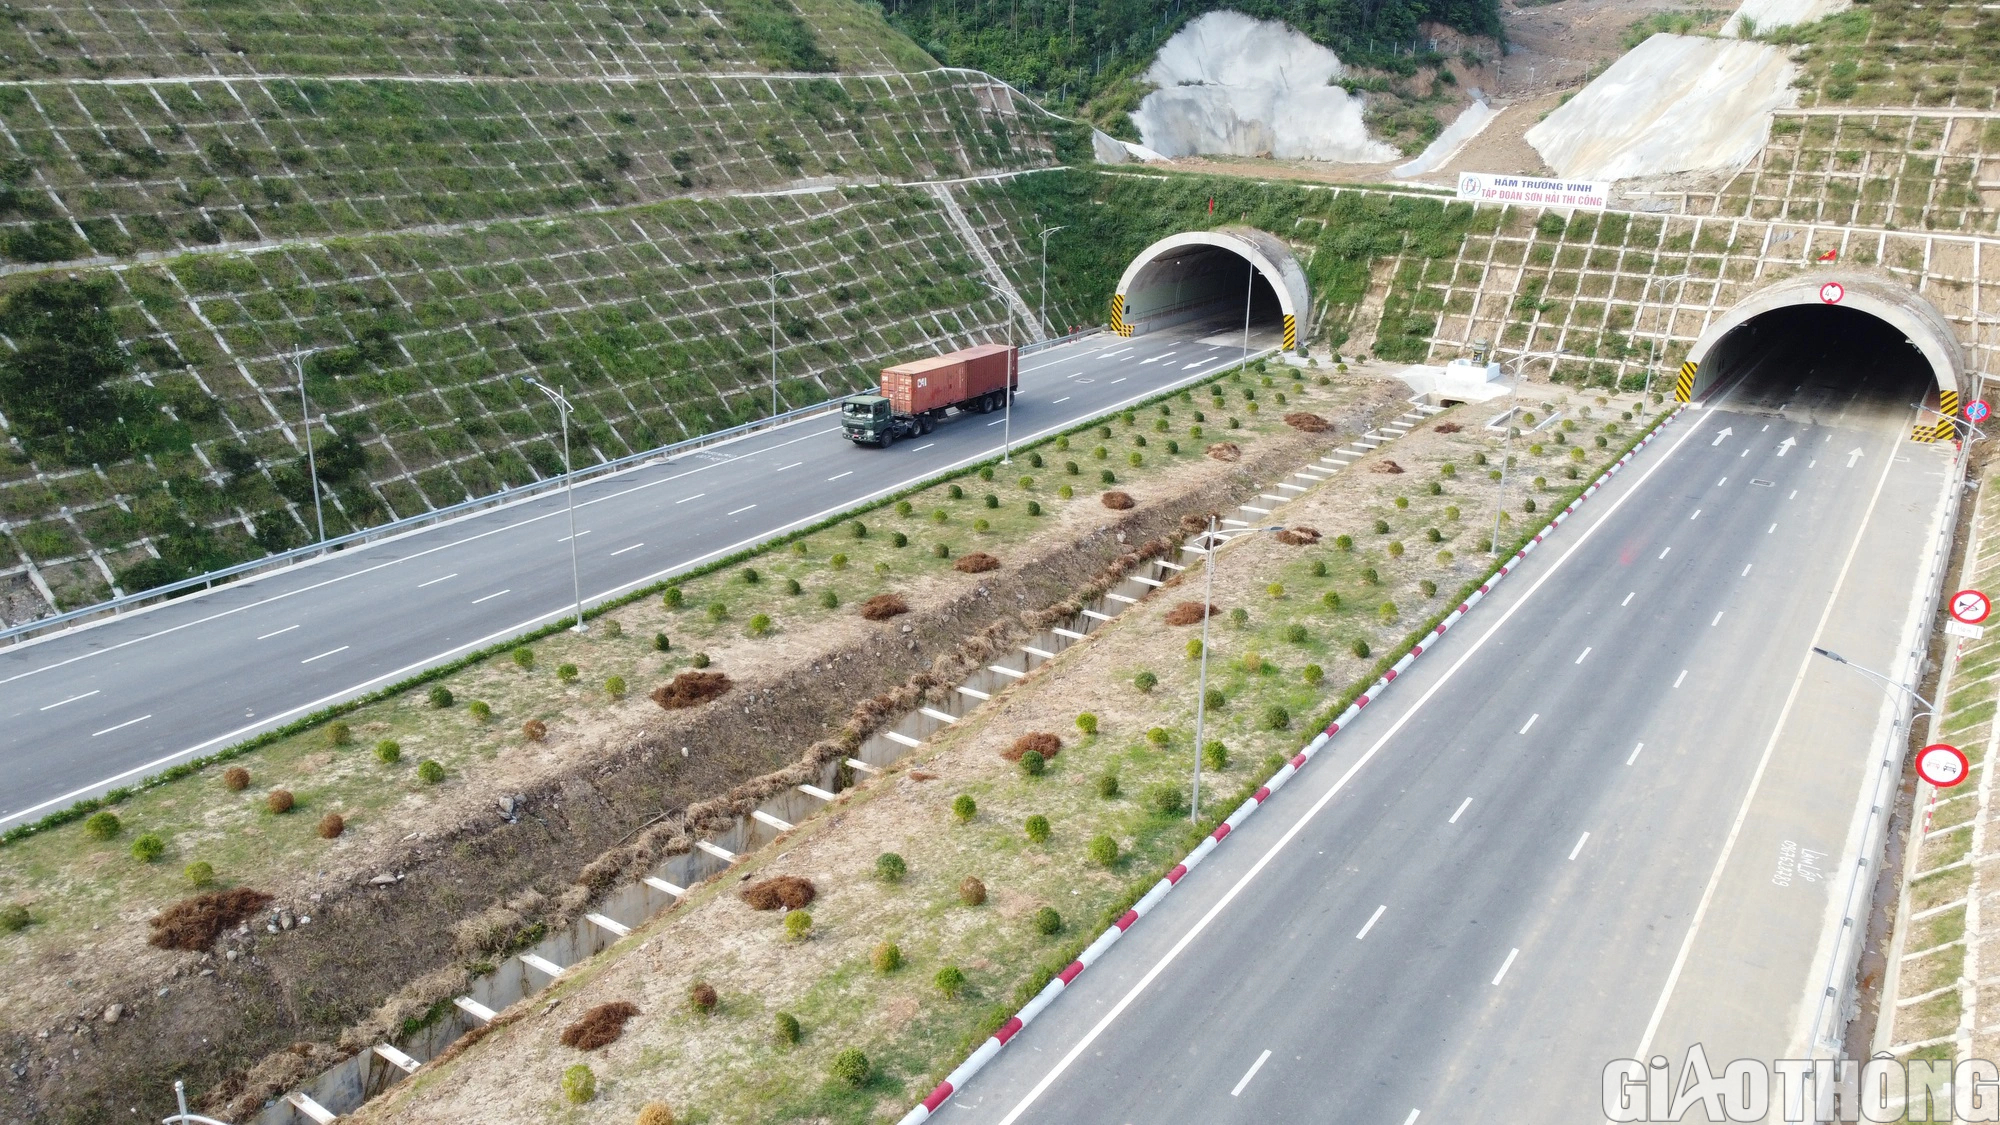 Thanh Hóa tập trung đầu tư hạ tầng khi cao tốc Bắc - Nam hoàn thành - Ảnh 1.